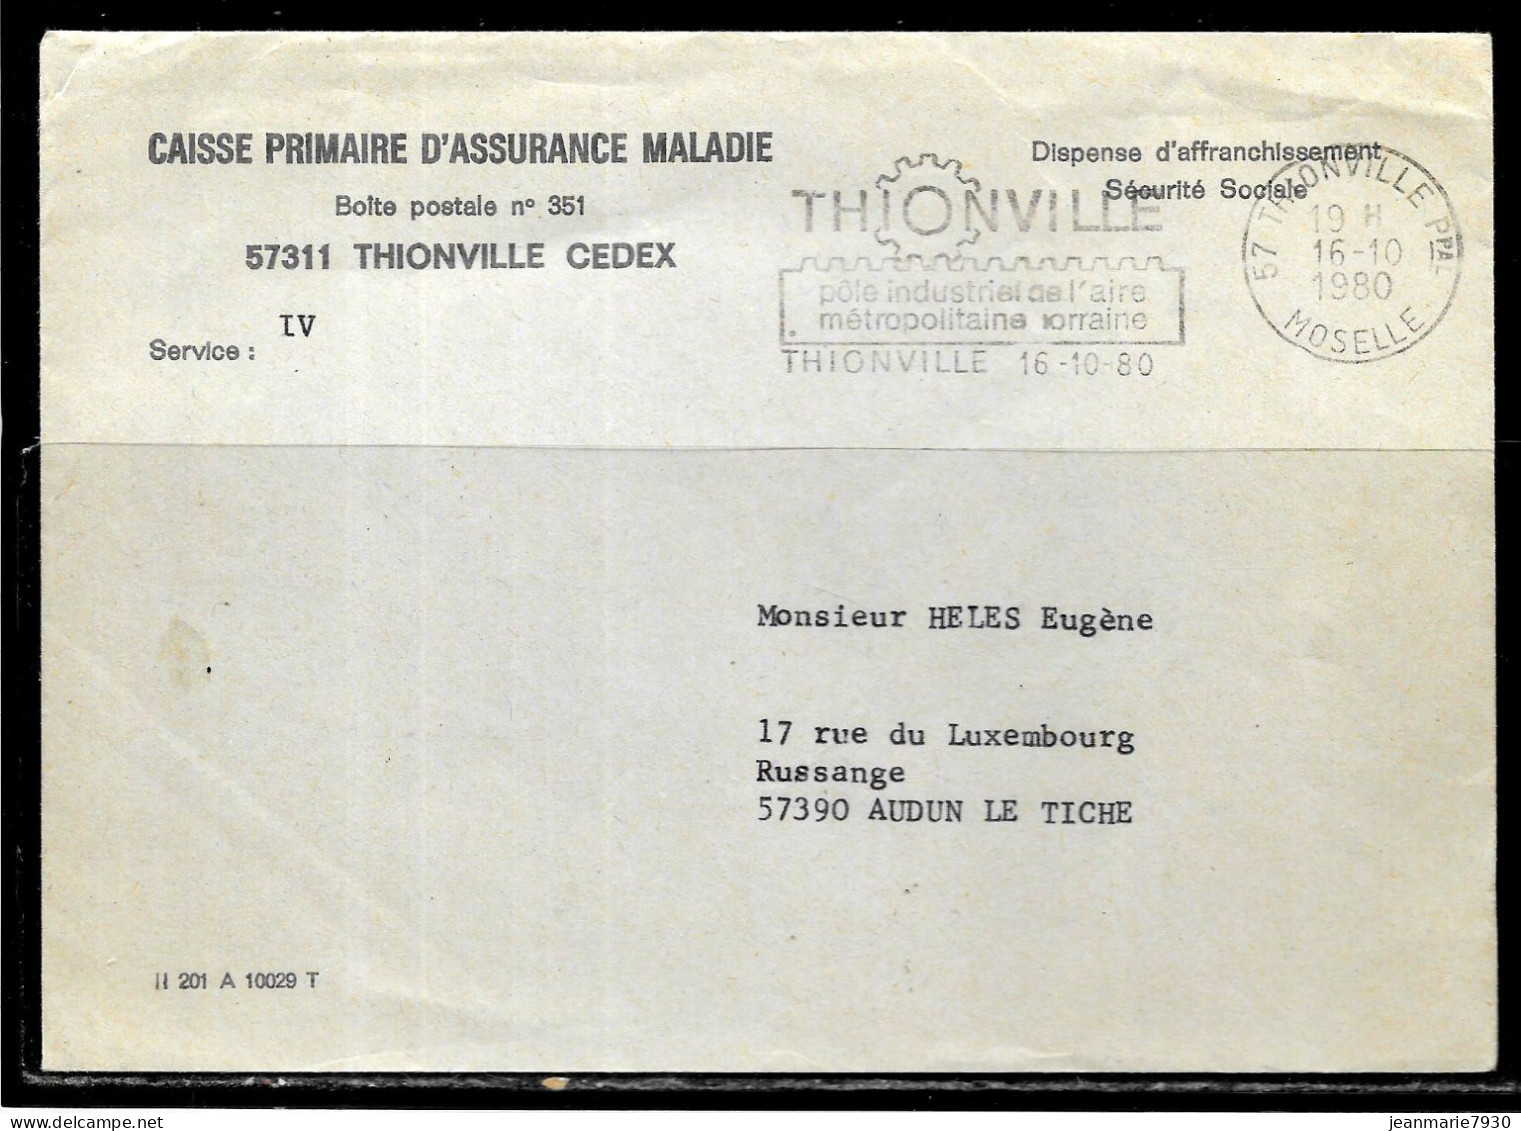 P246 - LETTRE EN FRANCHISE DE THIONVILLE DU 16/10/80 - CPAM - FLAMME - Lettres Civiles En Franchise